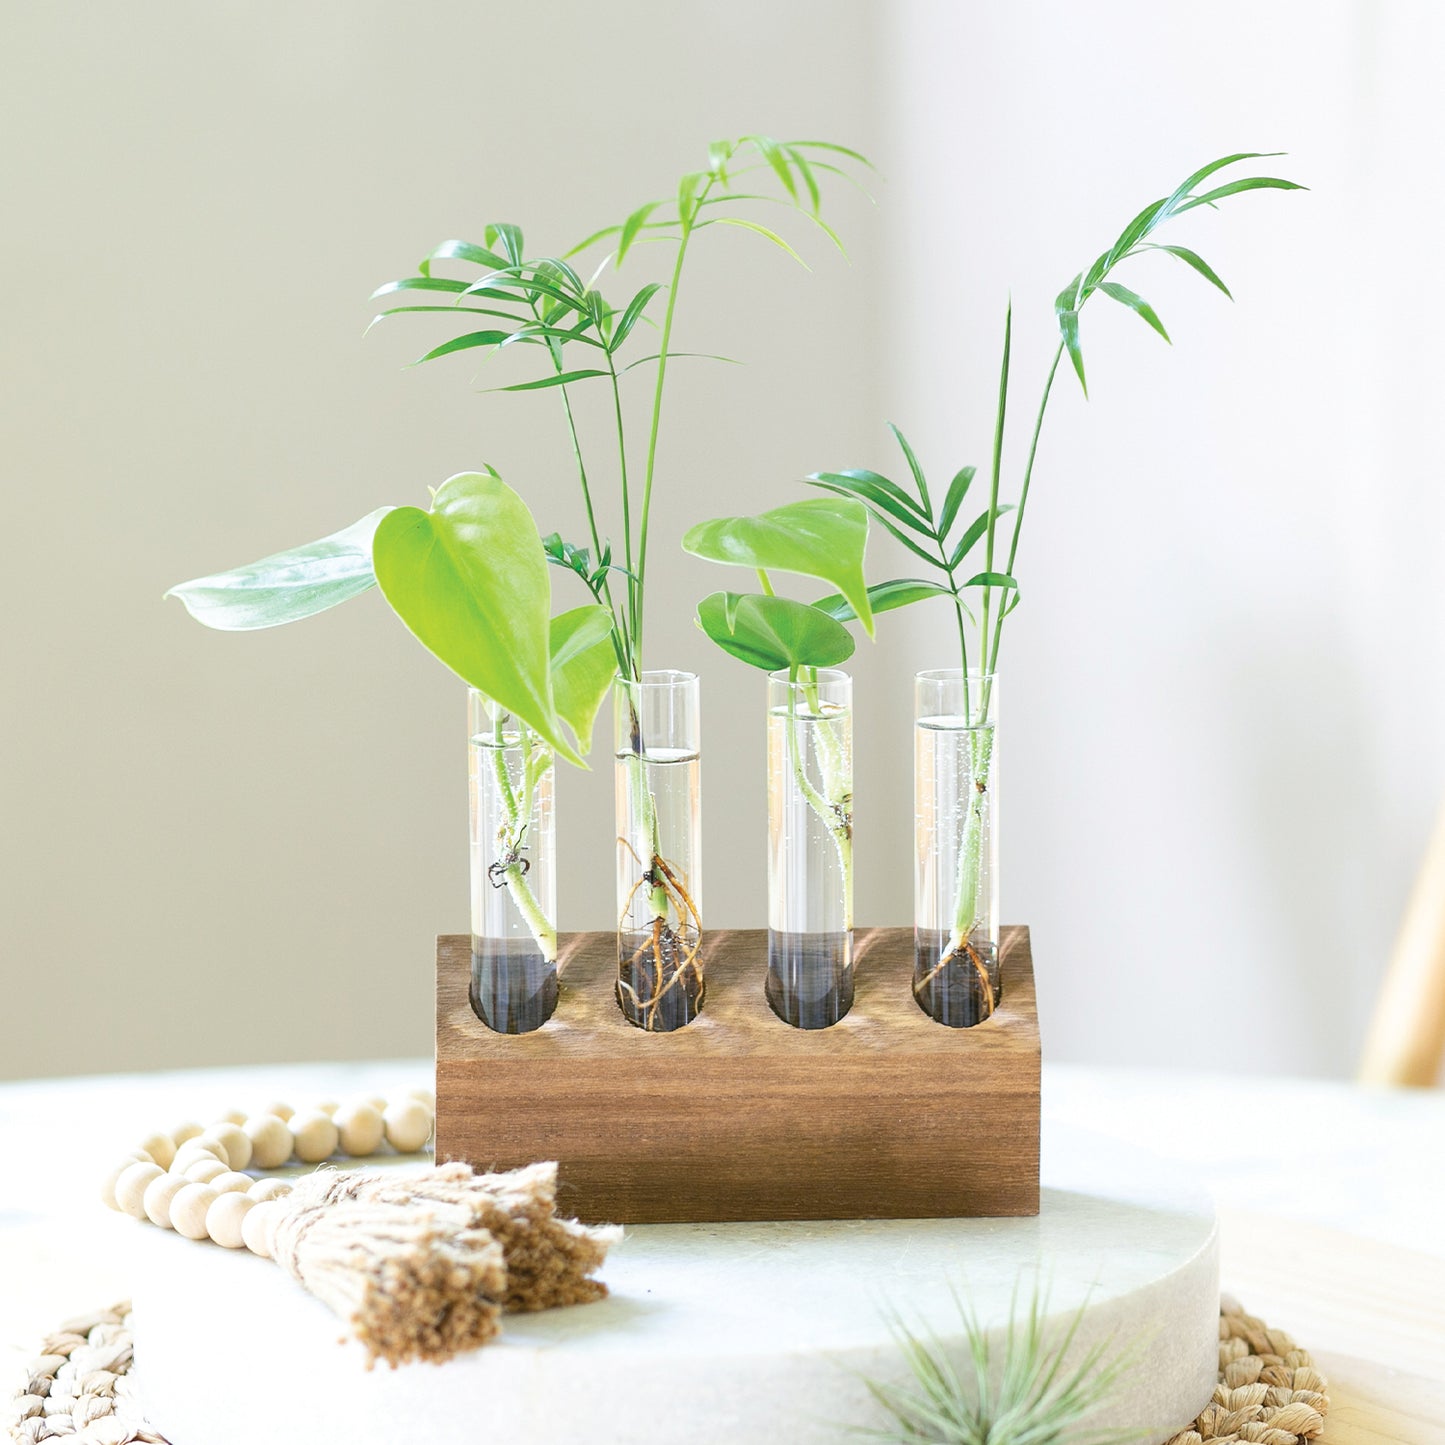 green plants growing in a propagation kit